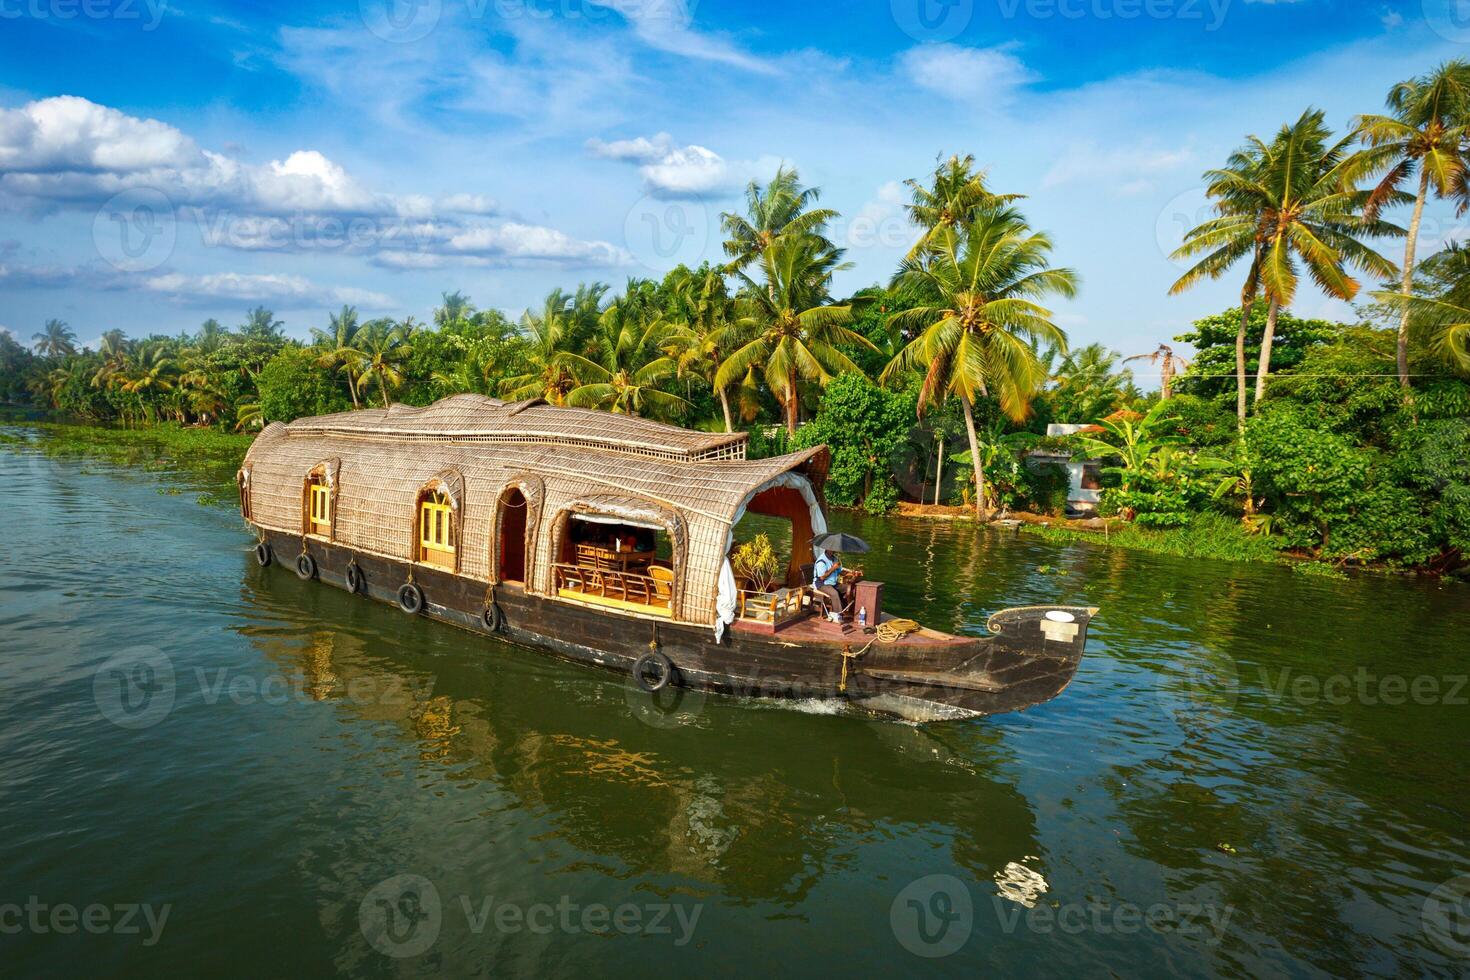 husbåt på kerala bakvatten, Indien foto